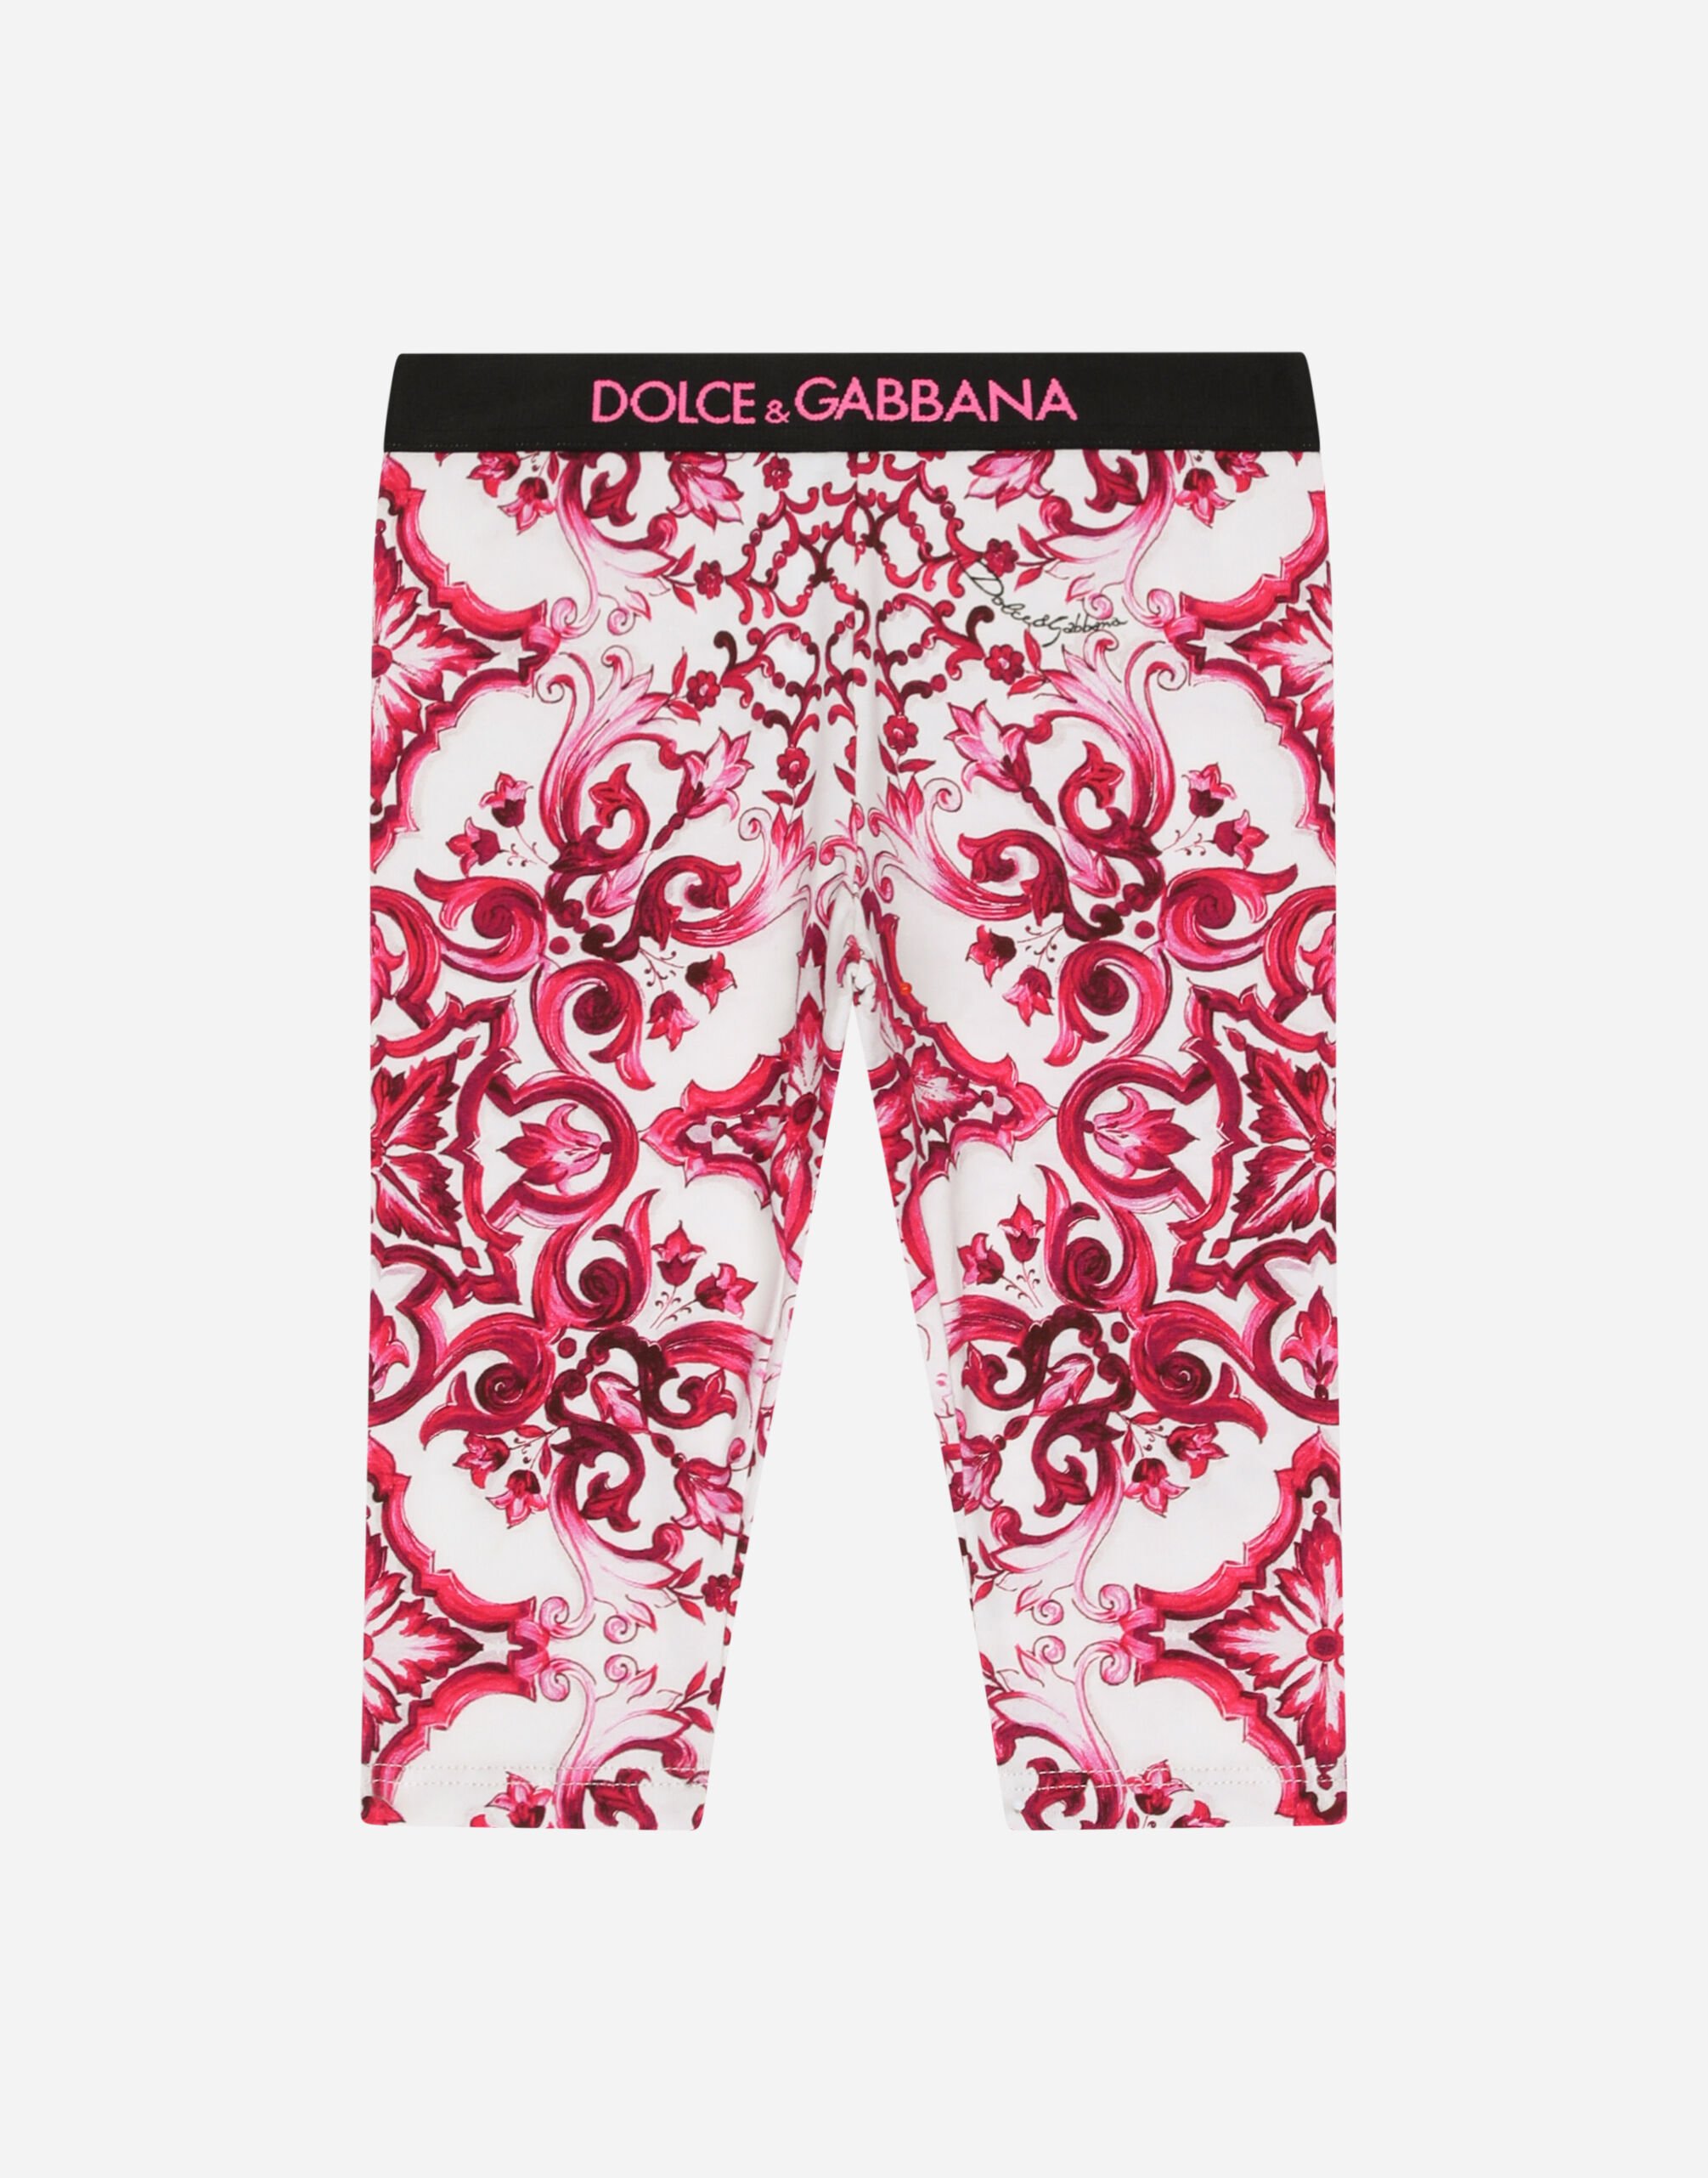 Dolce & Gabbana Leggings in interlock stampa maiolica Stampa L23Q24G7K6S